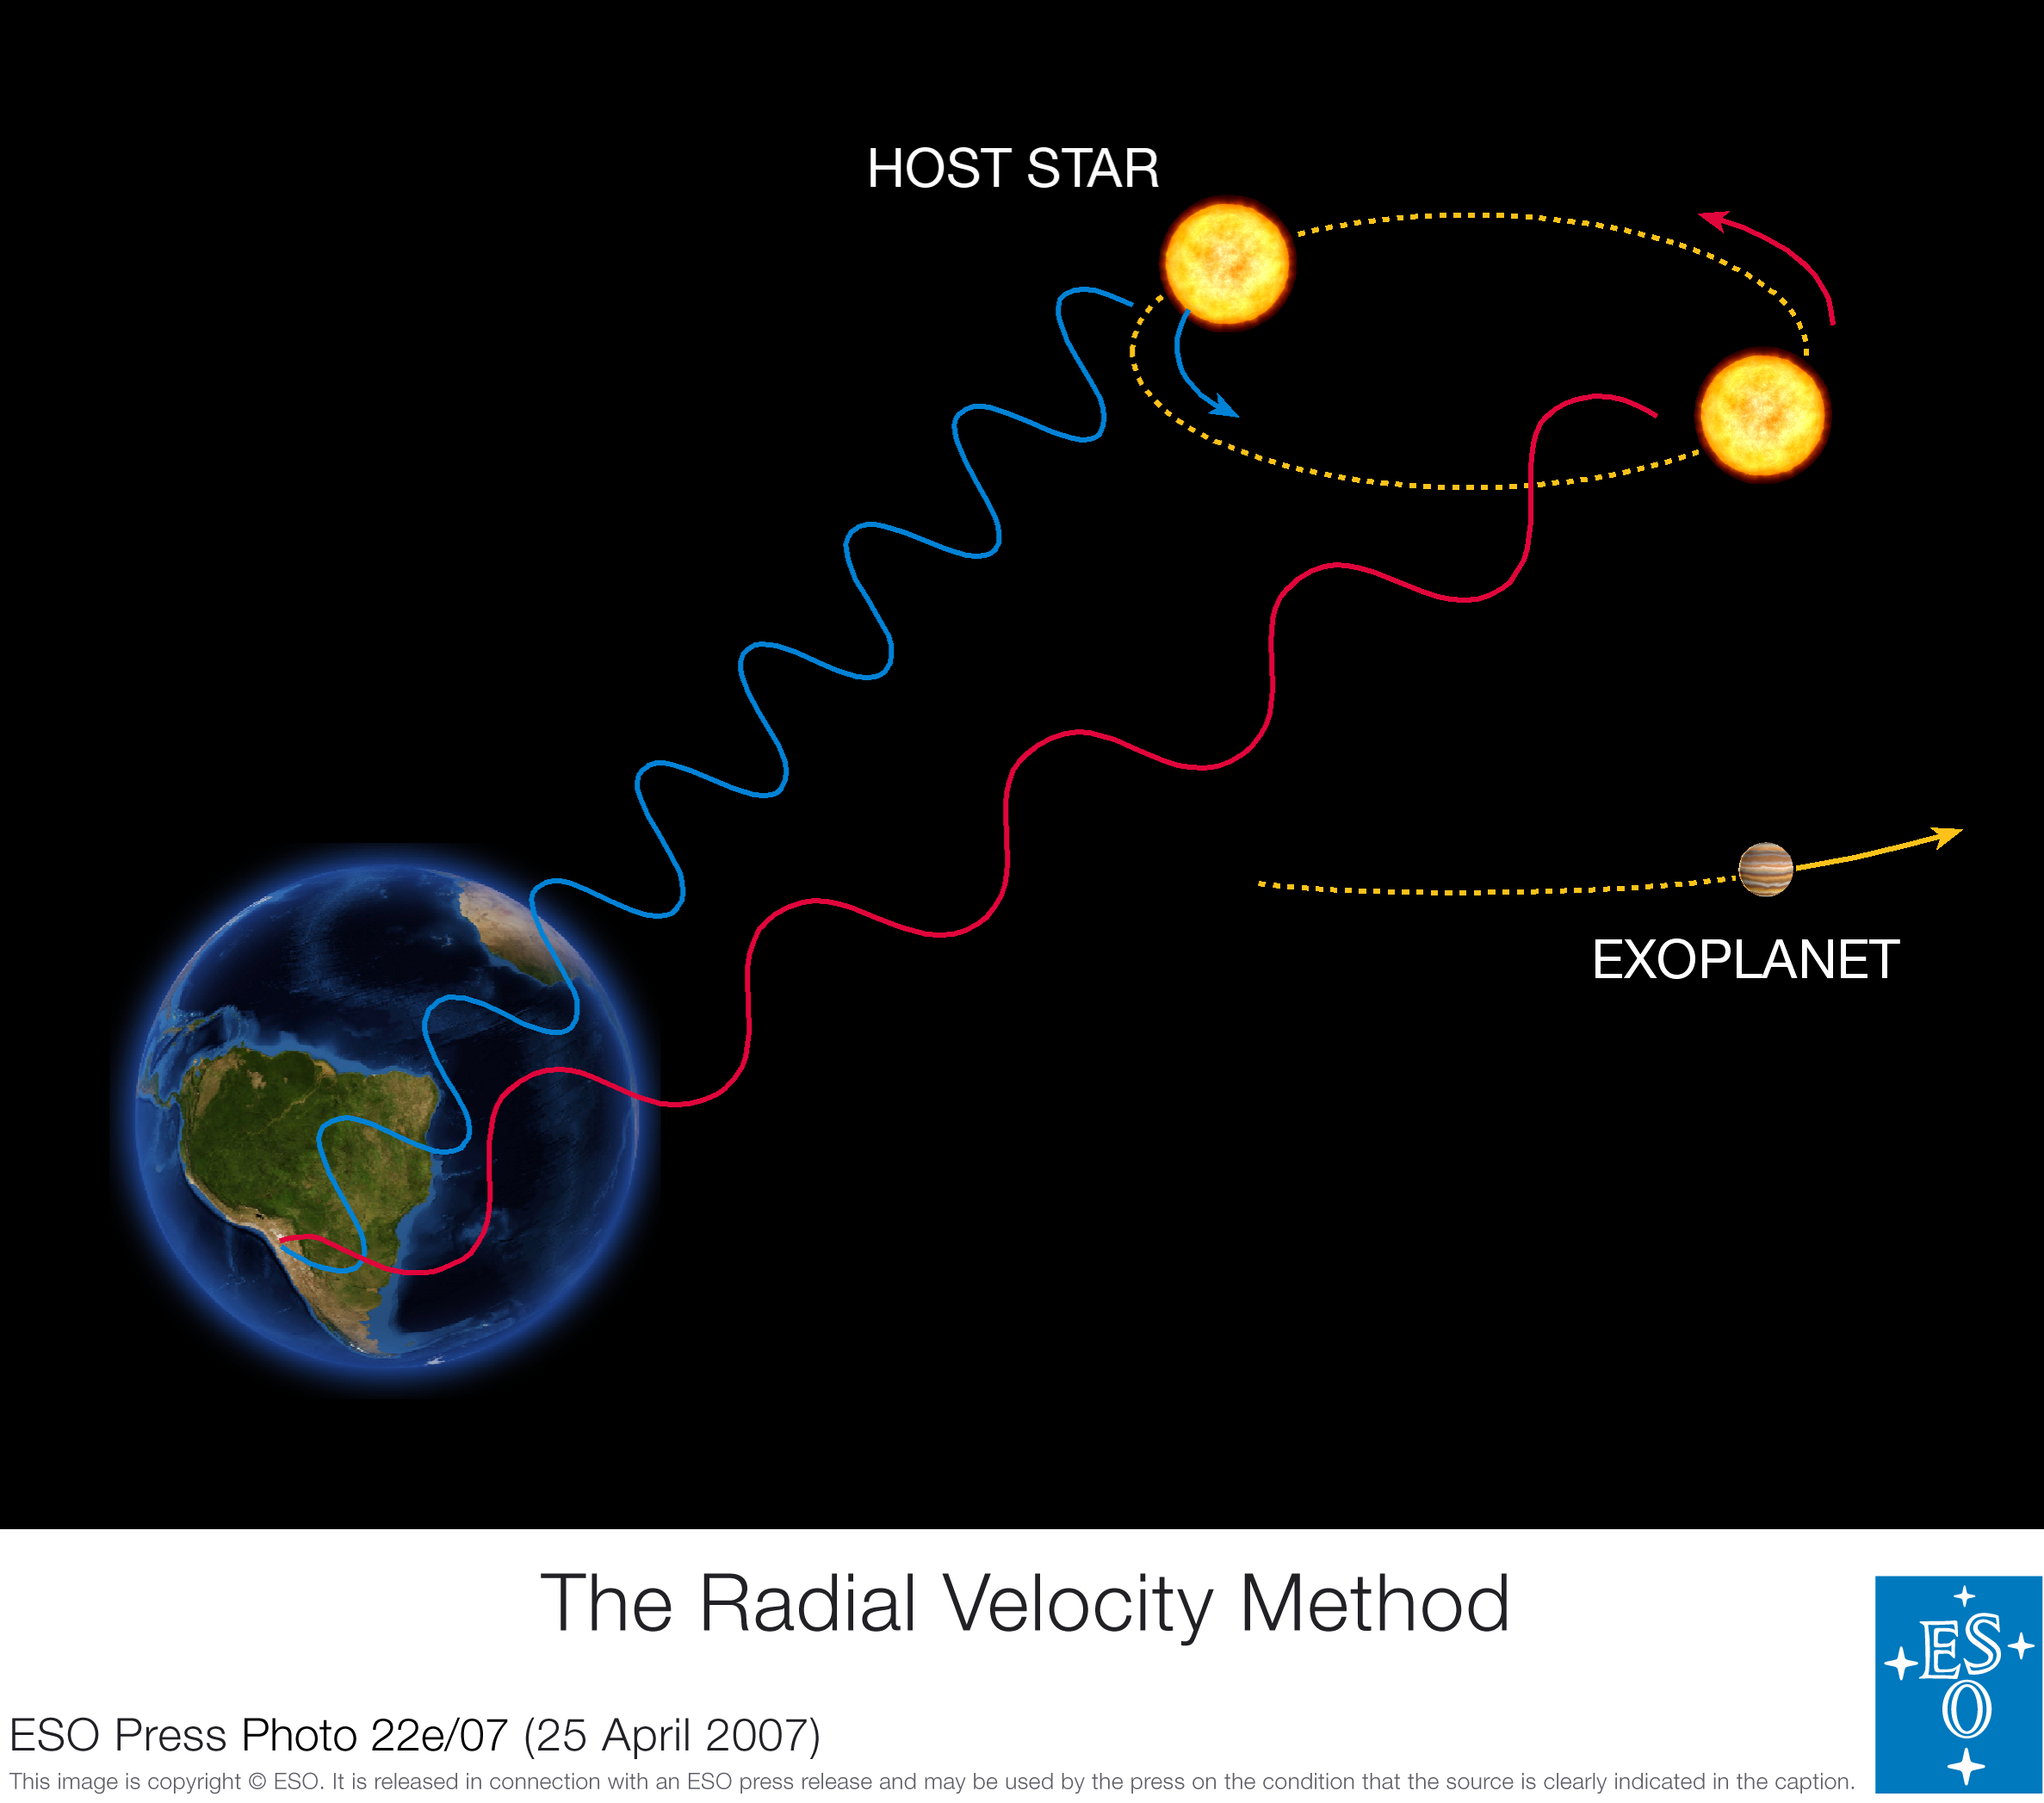 Extrasolaire Planeten Methoden Vster M plan = V plan M ster Radiele snelheidsmethode: ster en